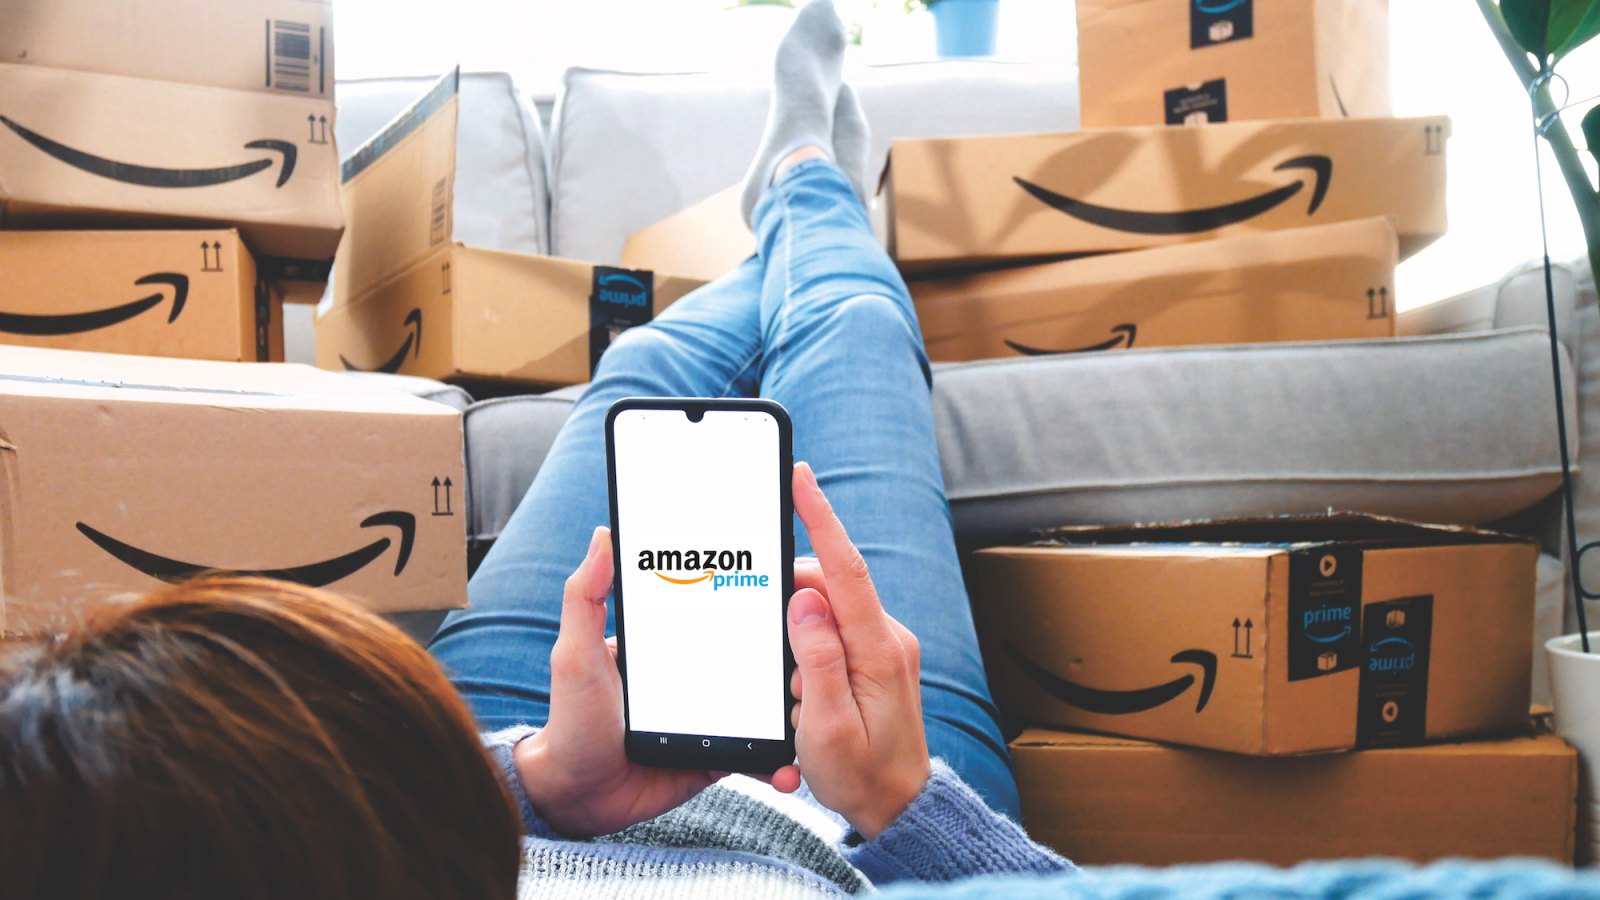 Amazon-Online-Ordering-Stock-Photo